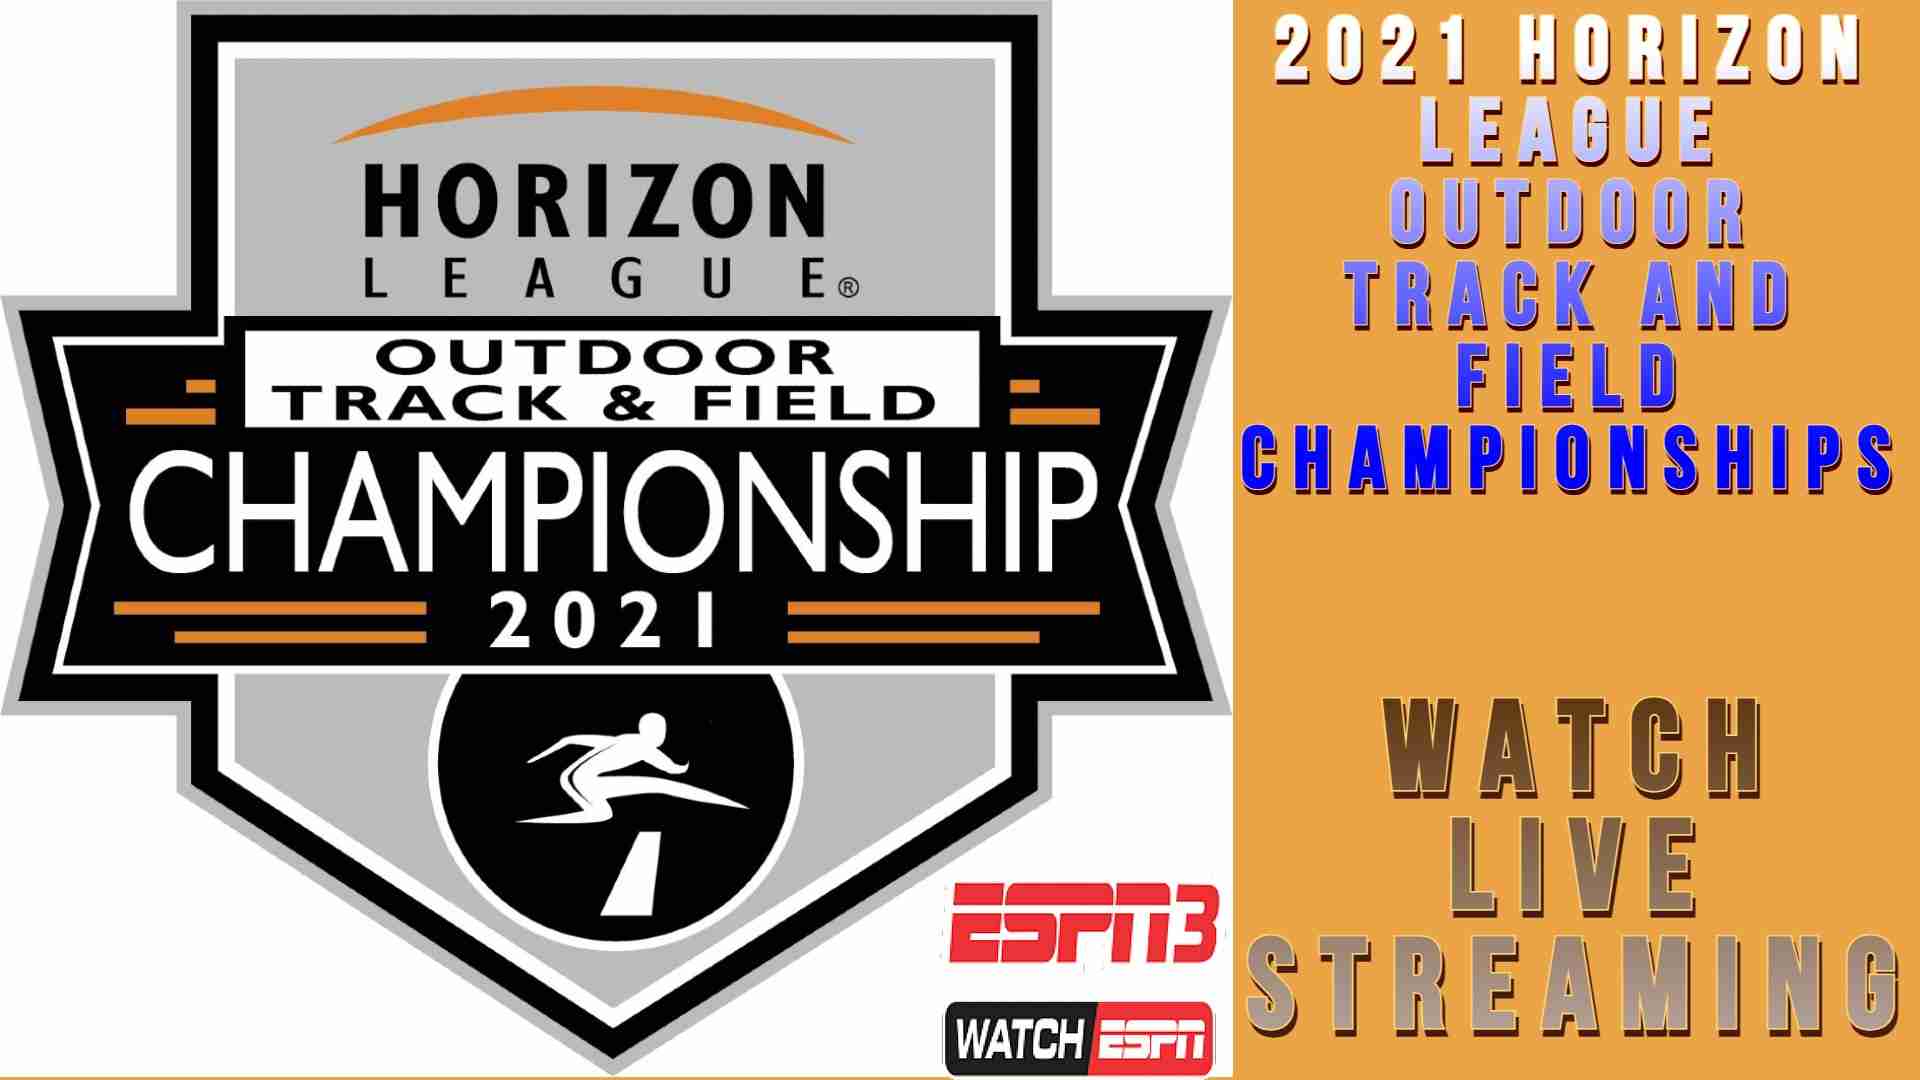 How You Can Watch 2021 Horizon League Outdoor Championship